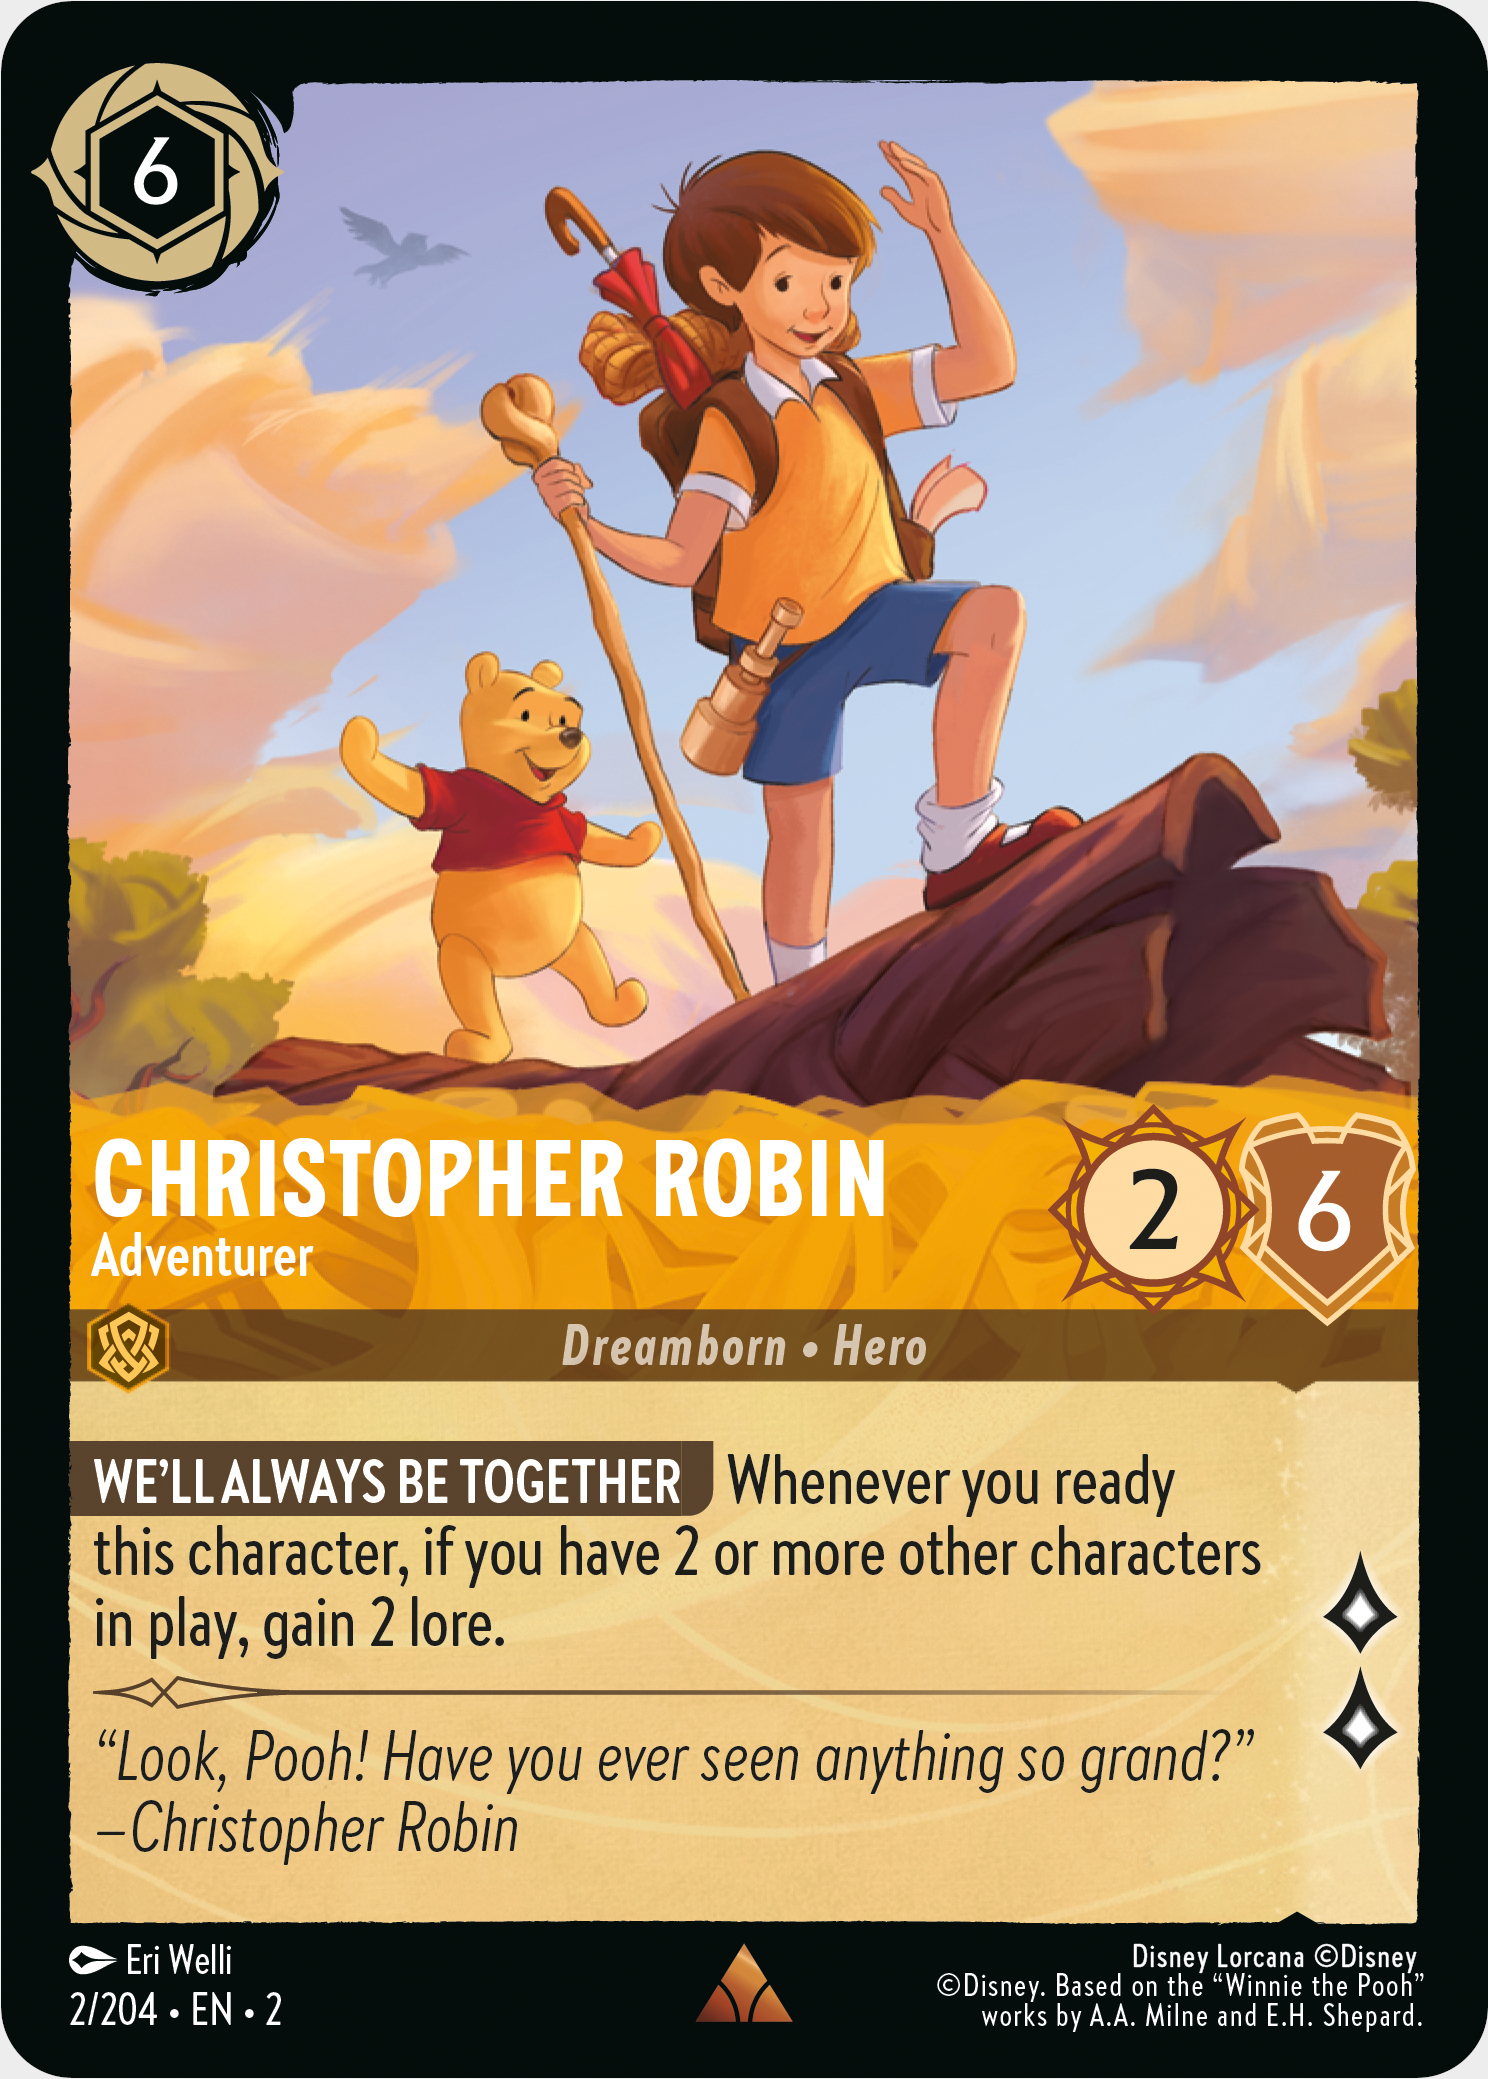 Disney Lorcana Christopher Robin, Abenteurerkarte, die Christopher Robin und Winnie the Pooh beim Überqueren eines Baumstamms zeigt